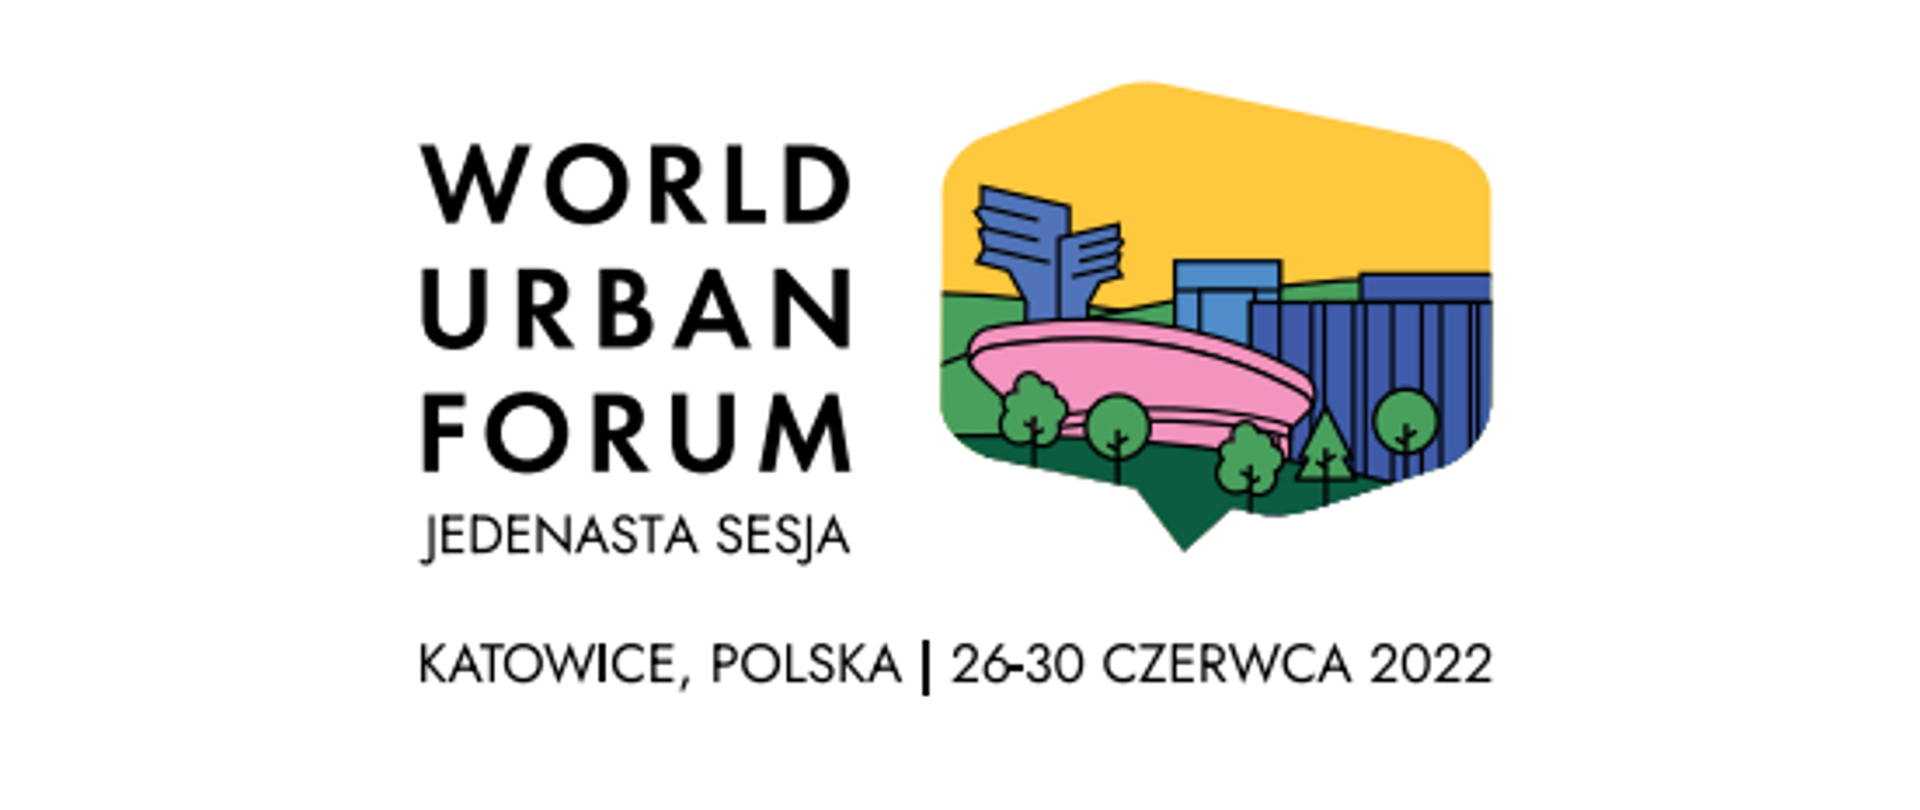 Ruszyła rejestracja na Światowe Forum Miejskie (WUF11) w Katowicach!